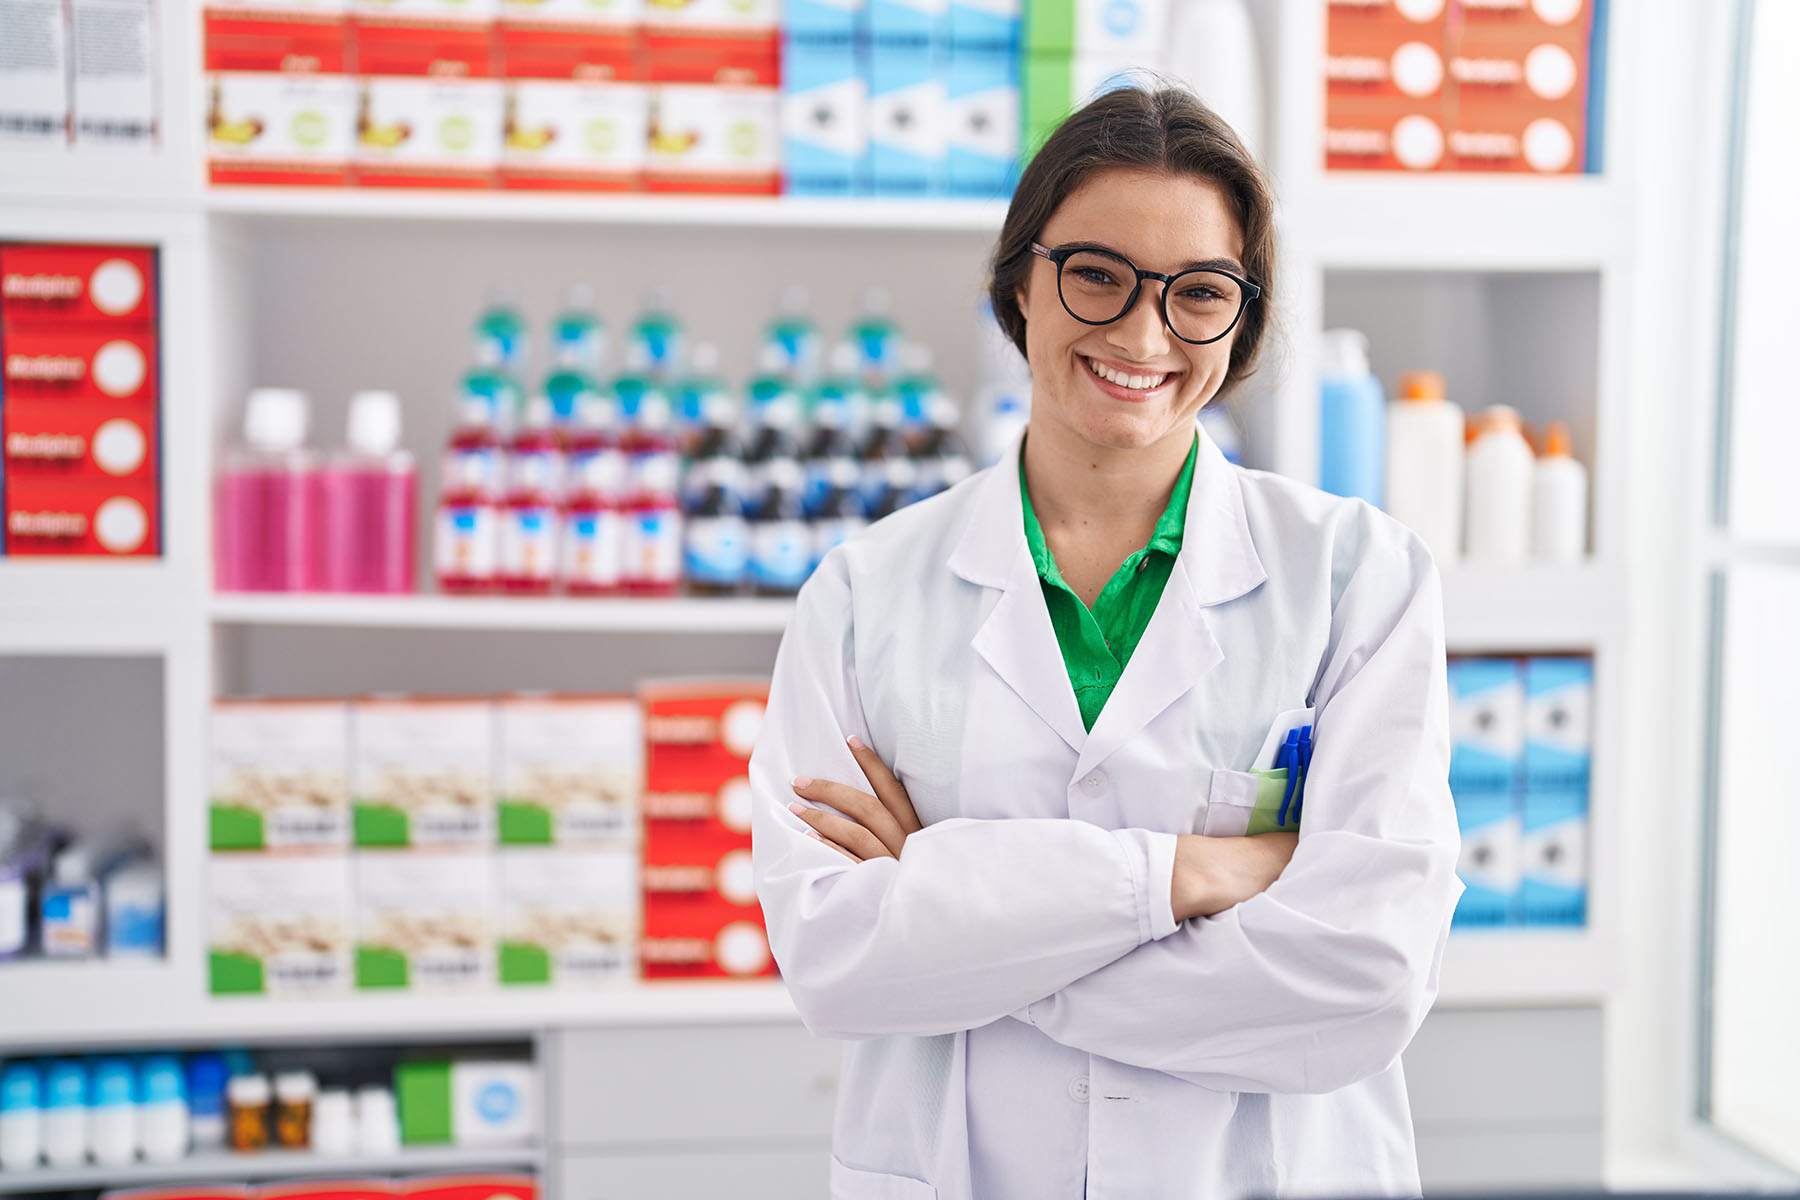 Estudo aborda impacto dos produtos farmacêuticos na qualidade de vida dos consumidores